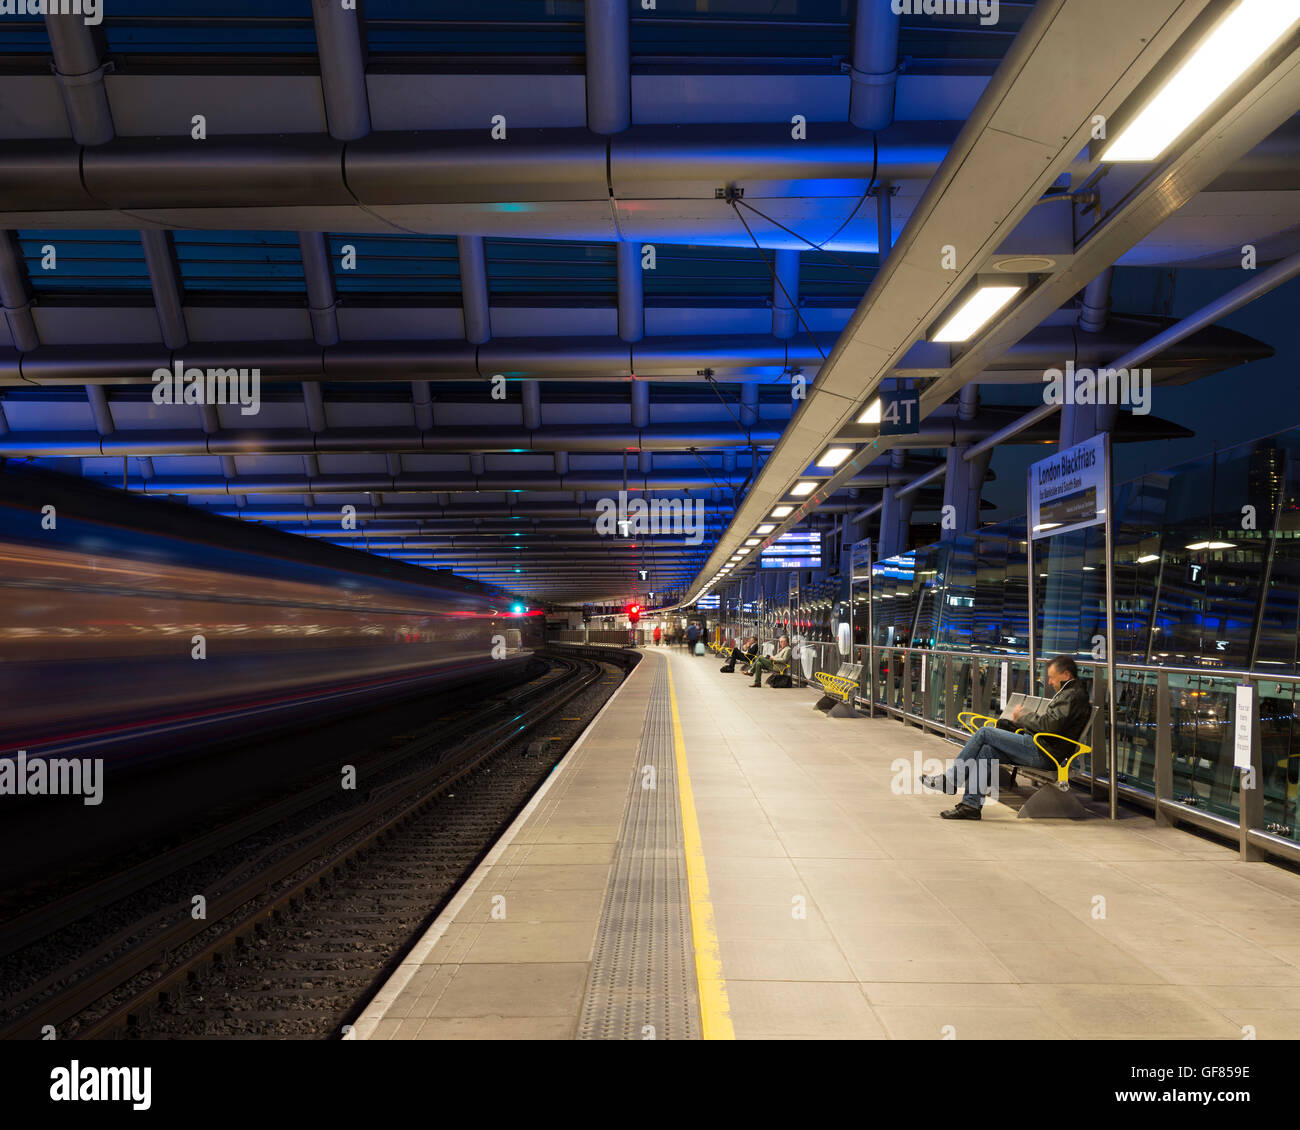 View along platform with passengers. Blackfriars Station, London, United Kingdom. Architect: Pascall+Watson architects Ltd, 2012. Stock Photo